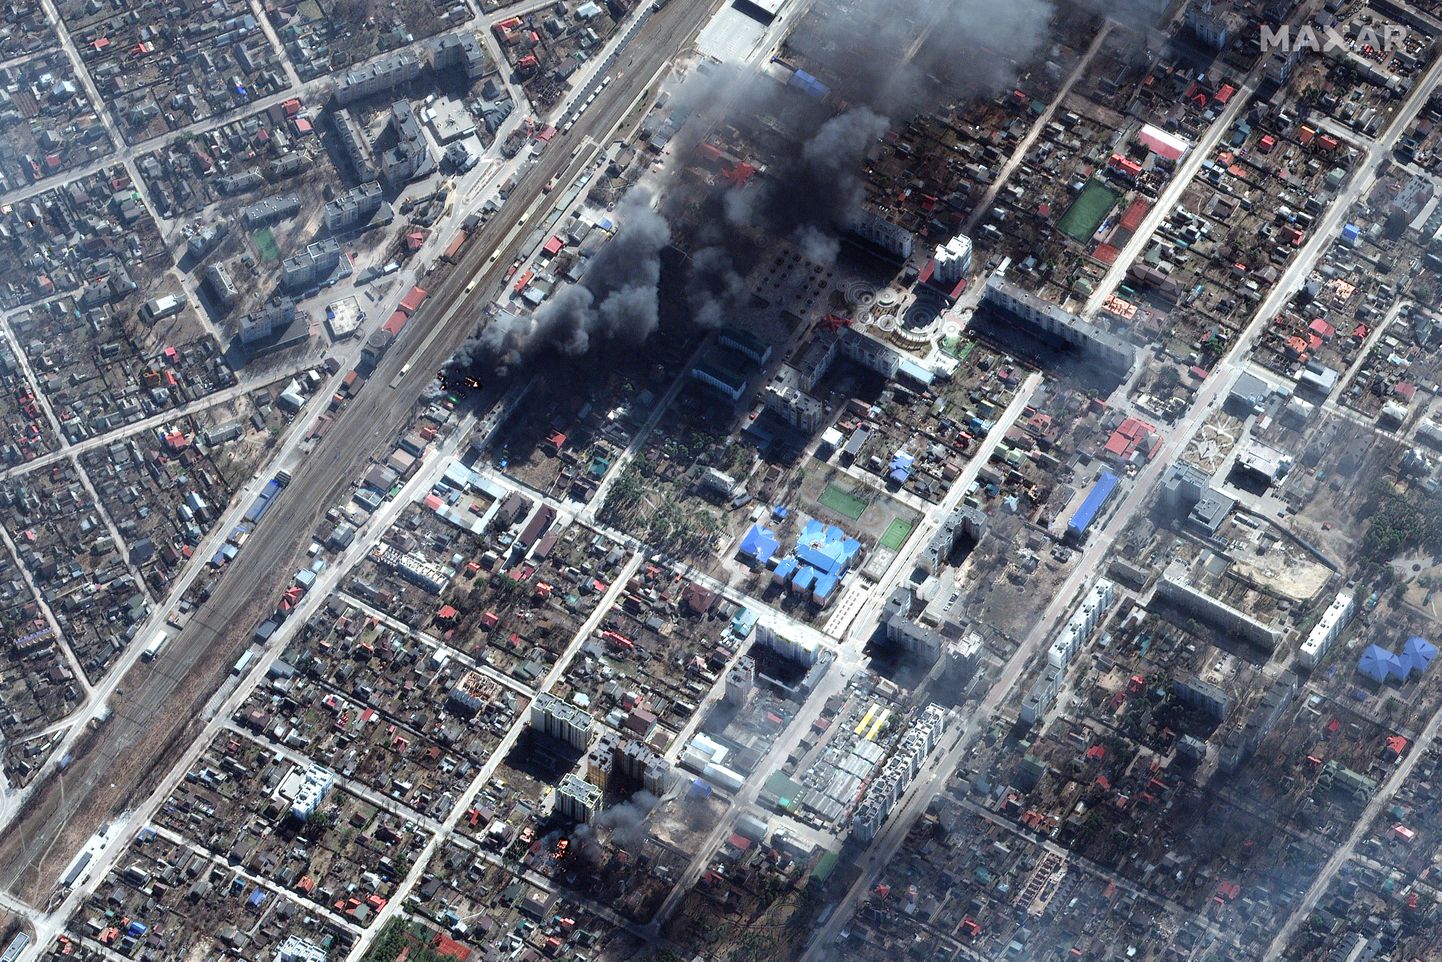 Sõjakahjustused Kiievi ääres asuvas Irpini linnas. Pilt on illustratiivne.